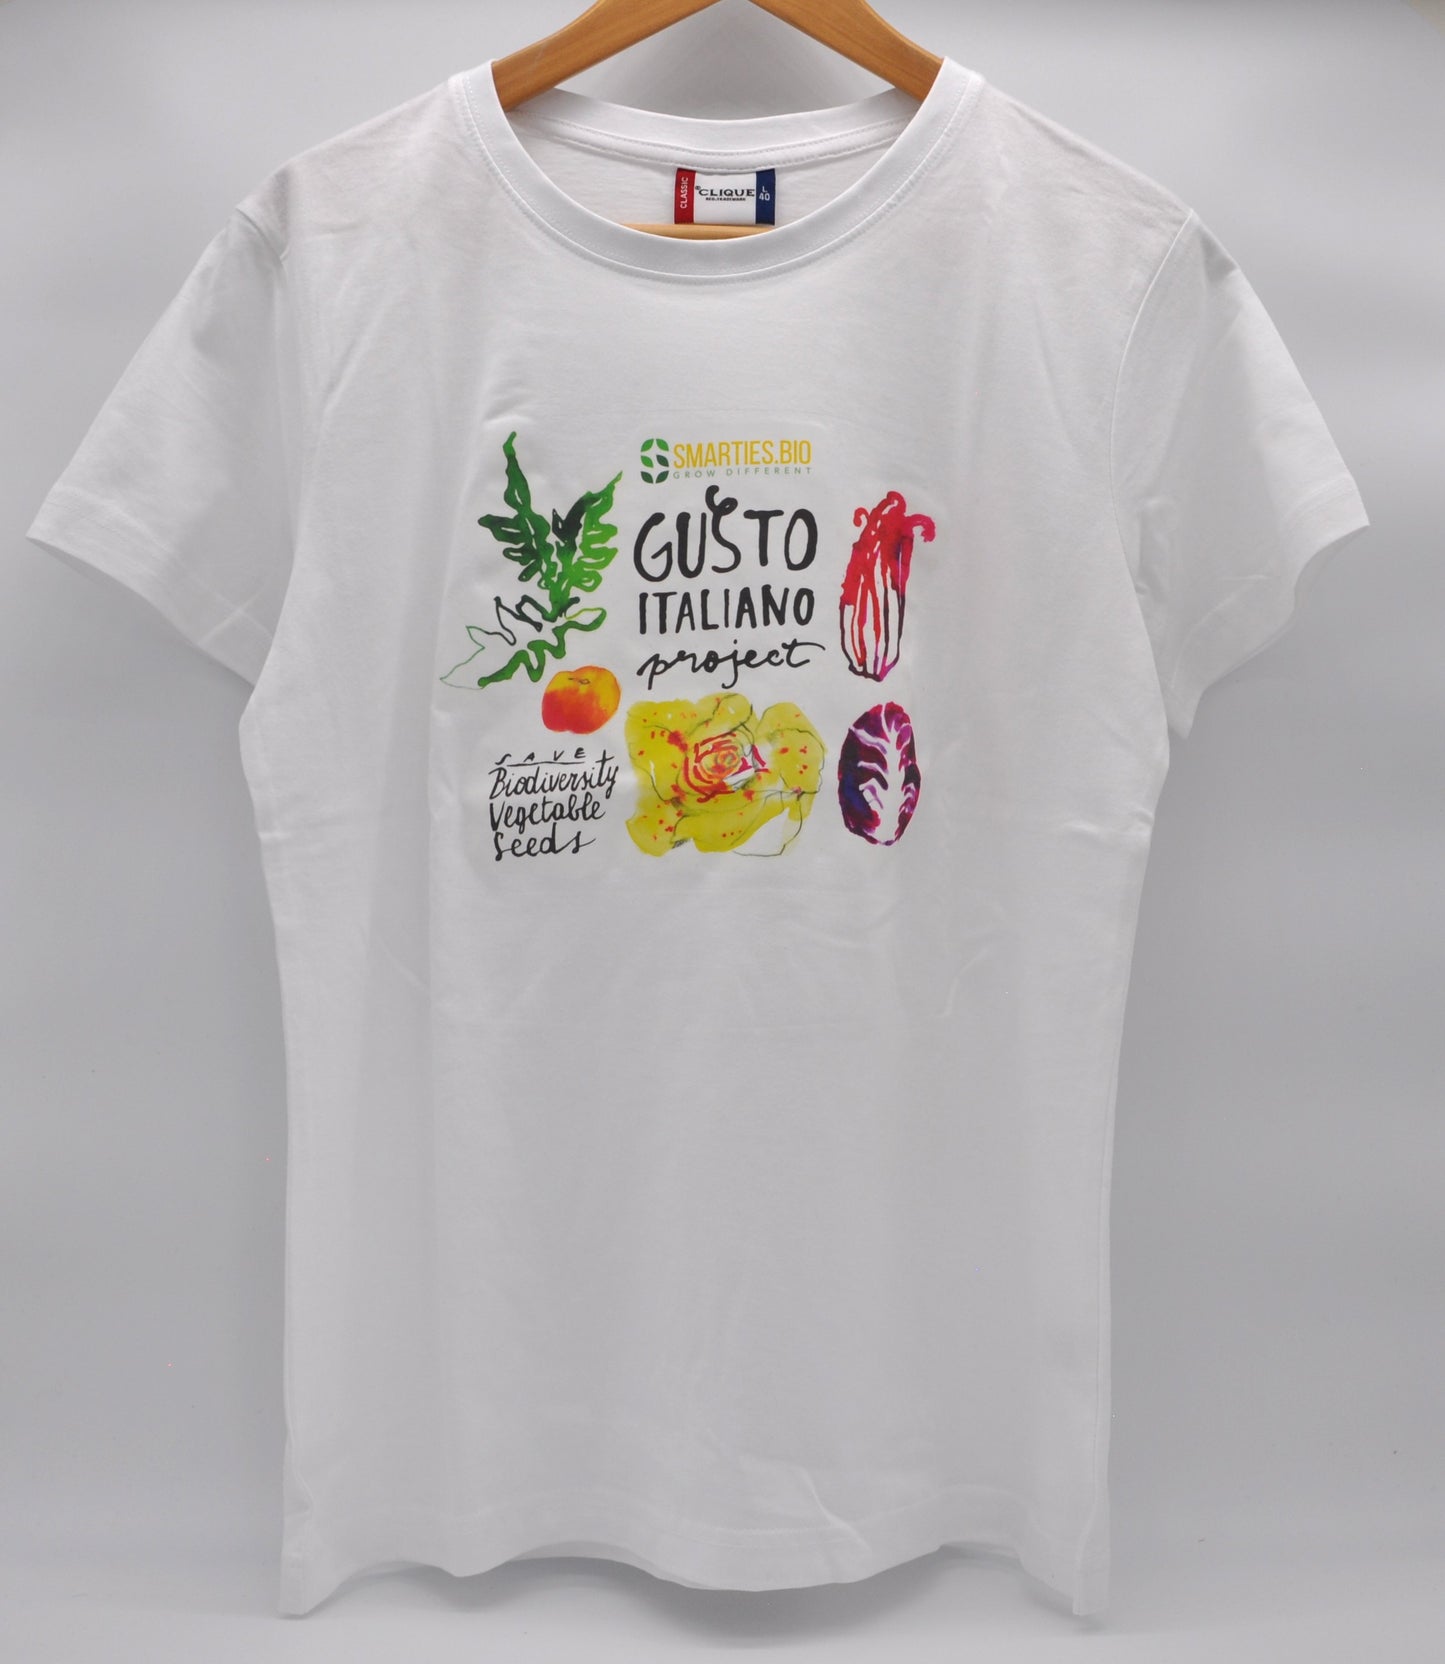 T-shirt "Gusto Italiano Project"